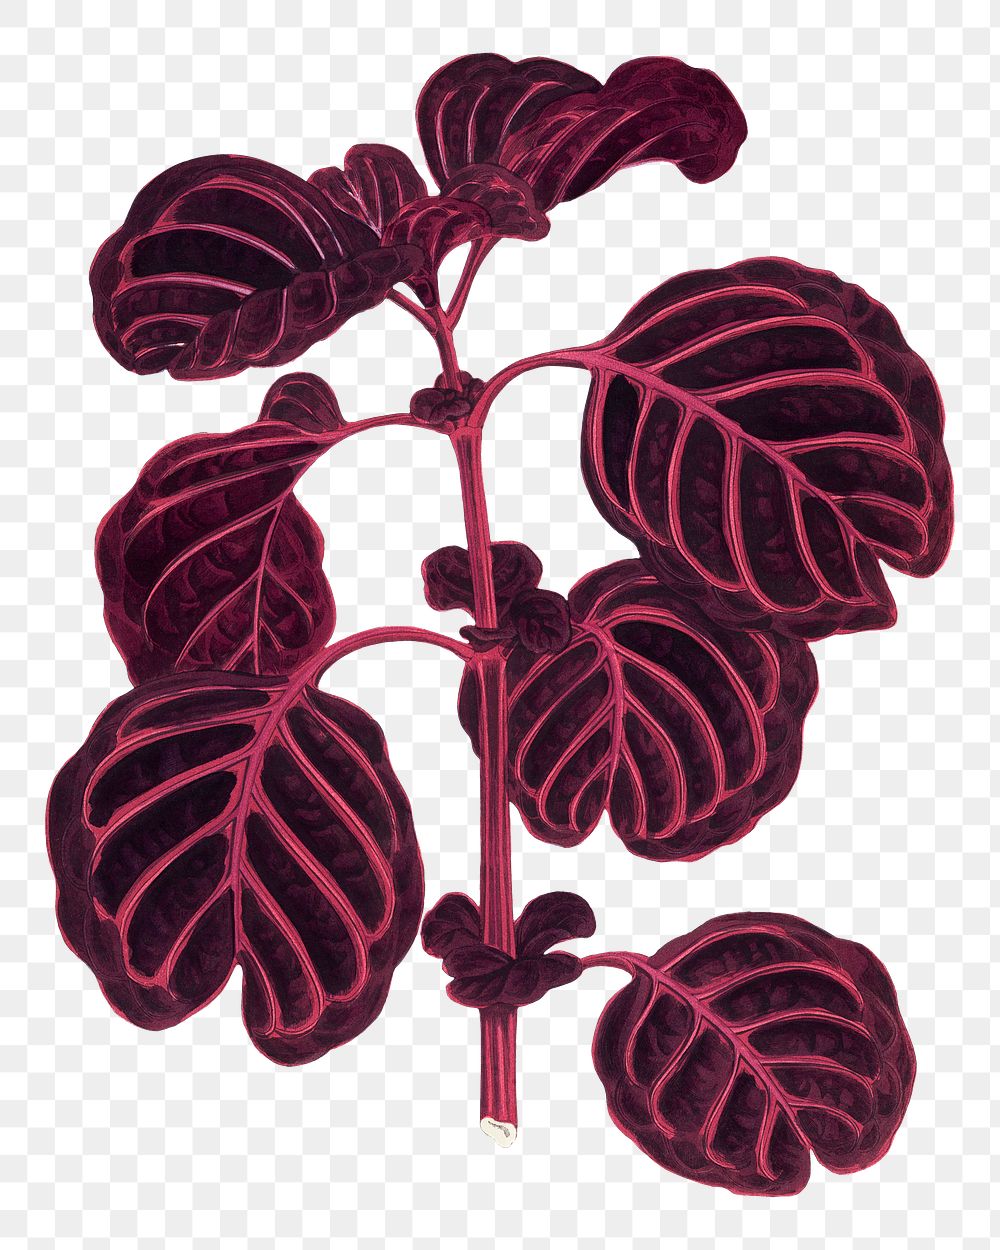 Pink leaf png sticker, botanical illustration, transparent background